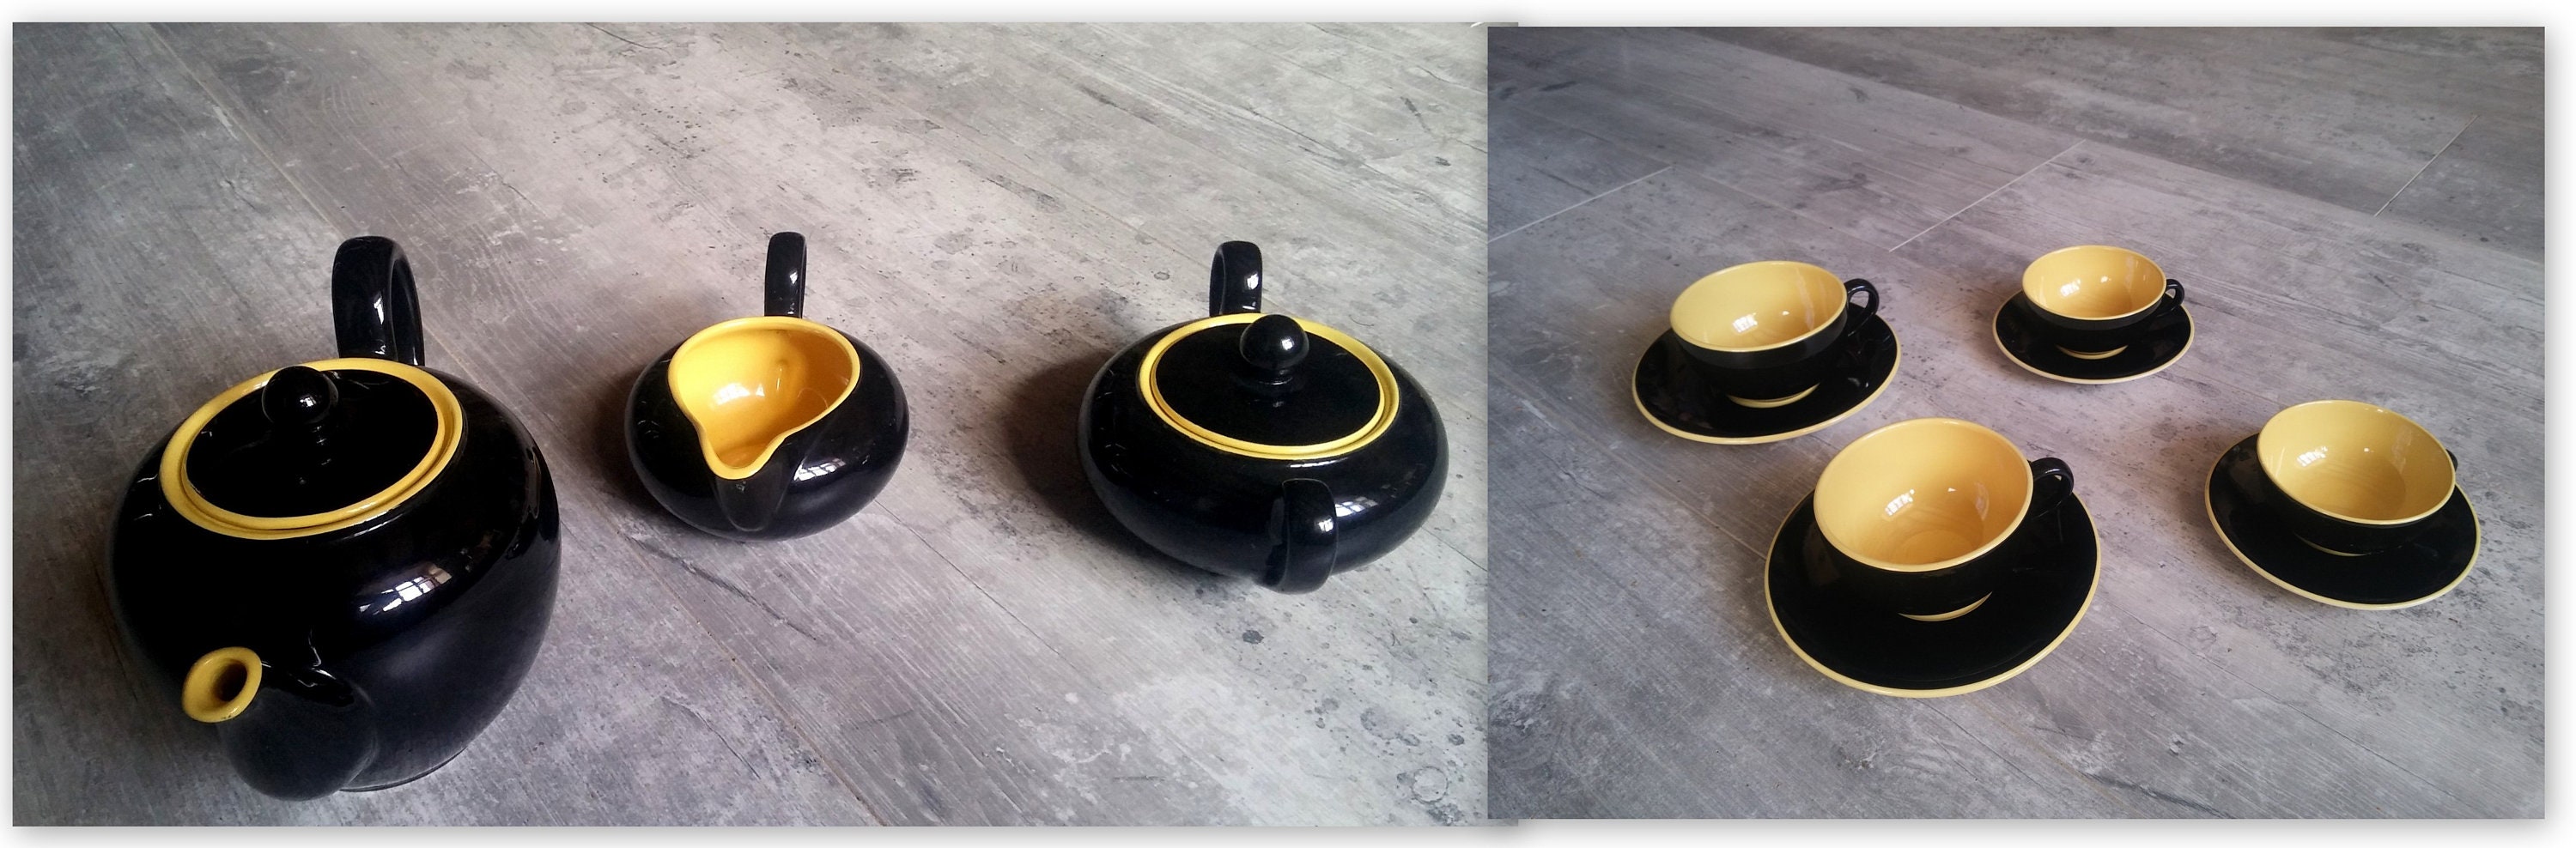 Villeroy Bosch Biarritz Fifties Tea Set Ceramic Vintage Yellow Black Service à Thé Années 50 Jaune e